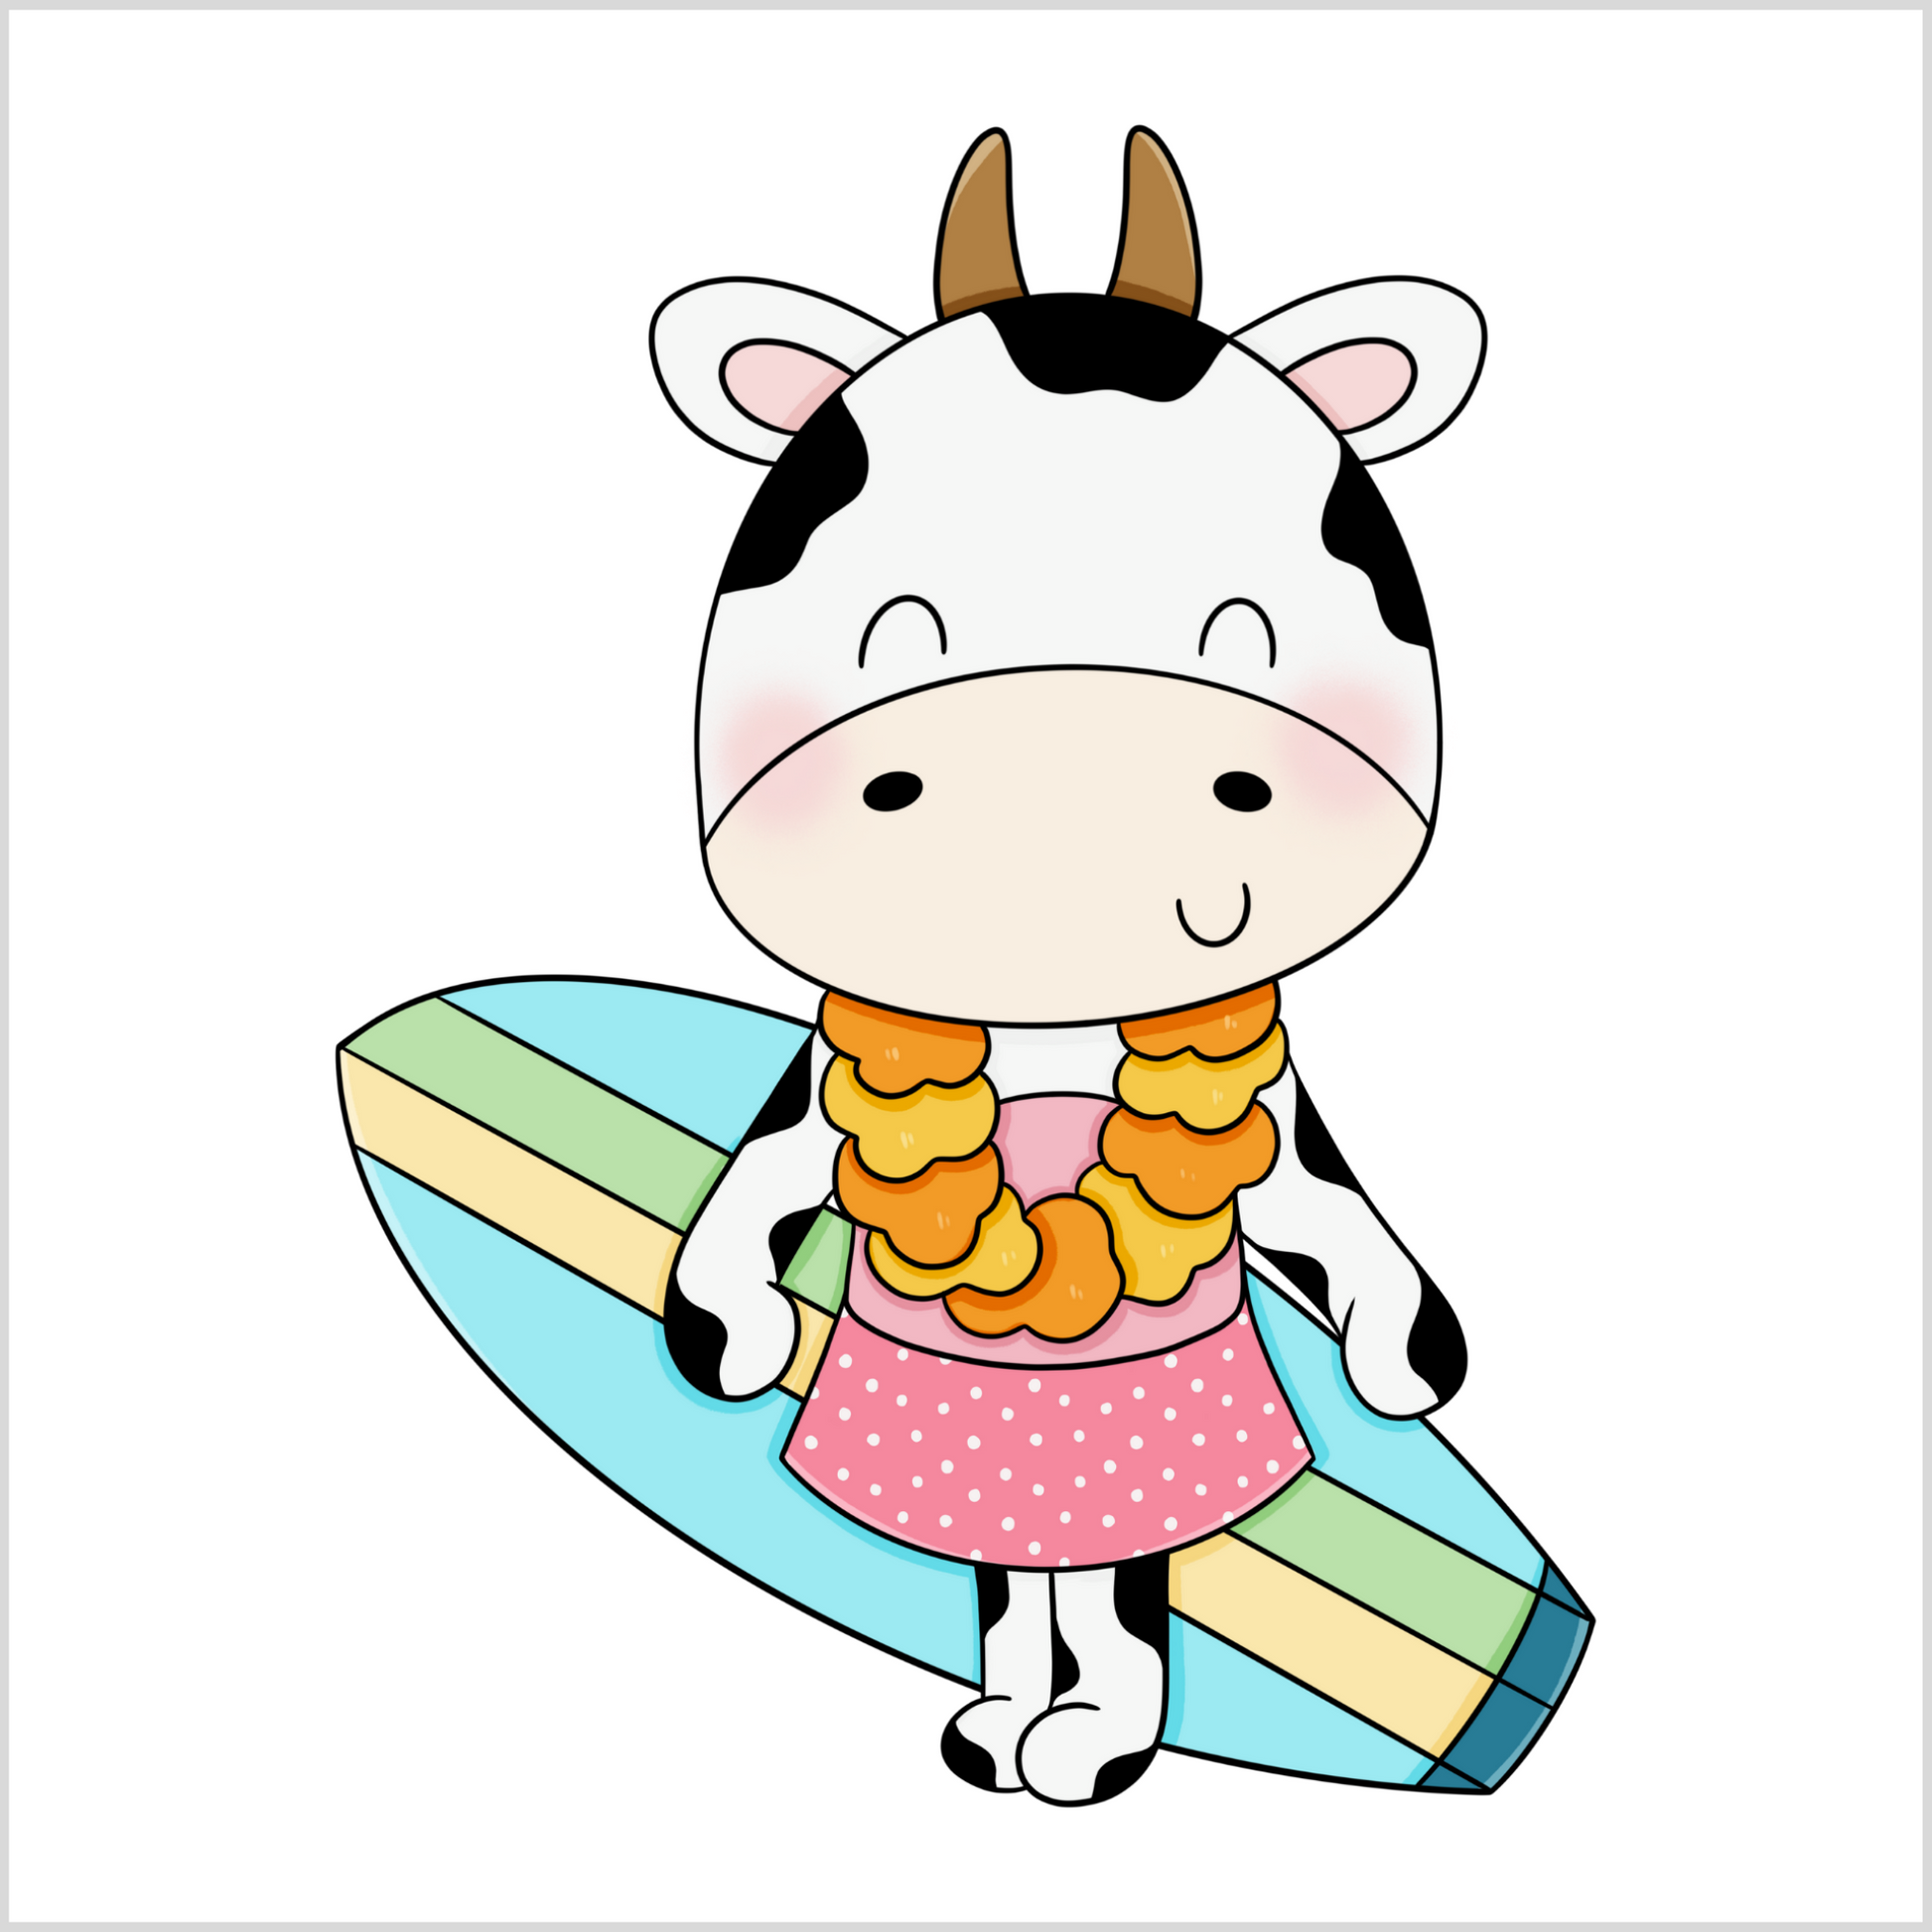 Grafisk illustrasjon av en ku-jente med et surfebrett med blå, gul og grønn striper. Hun har på lys rose overdel og rosa skjørt med hvite prikker. Rundt halsen har hun en blomsterkrans.